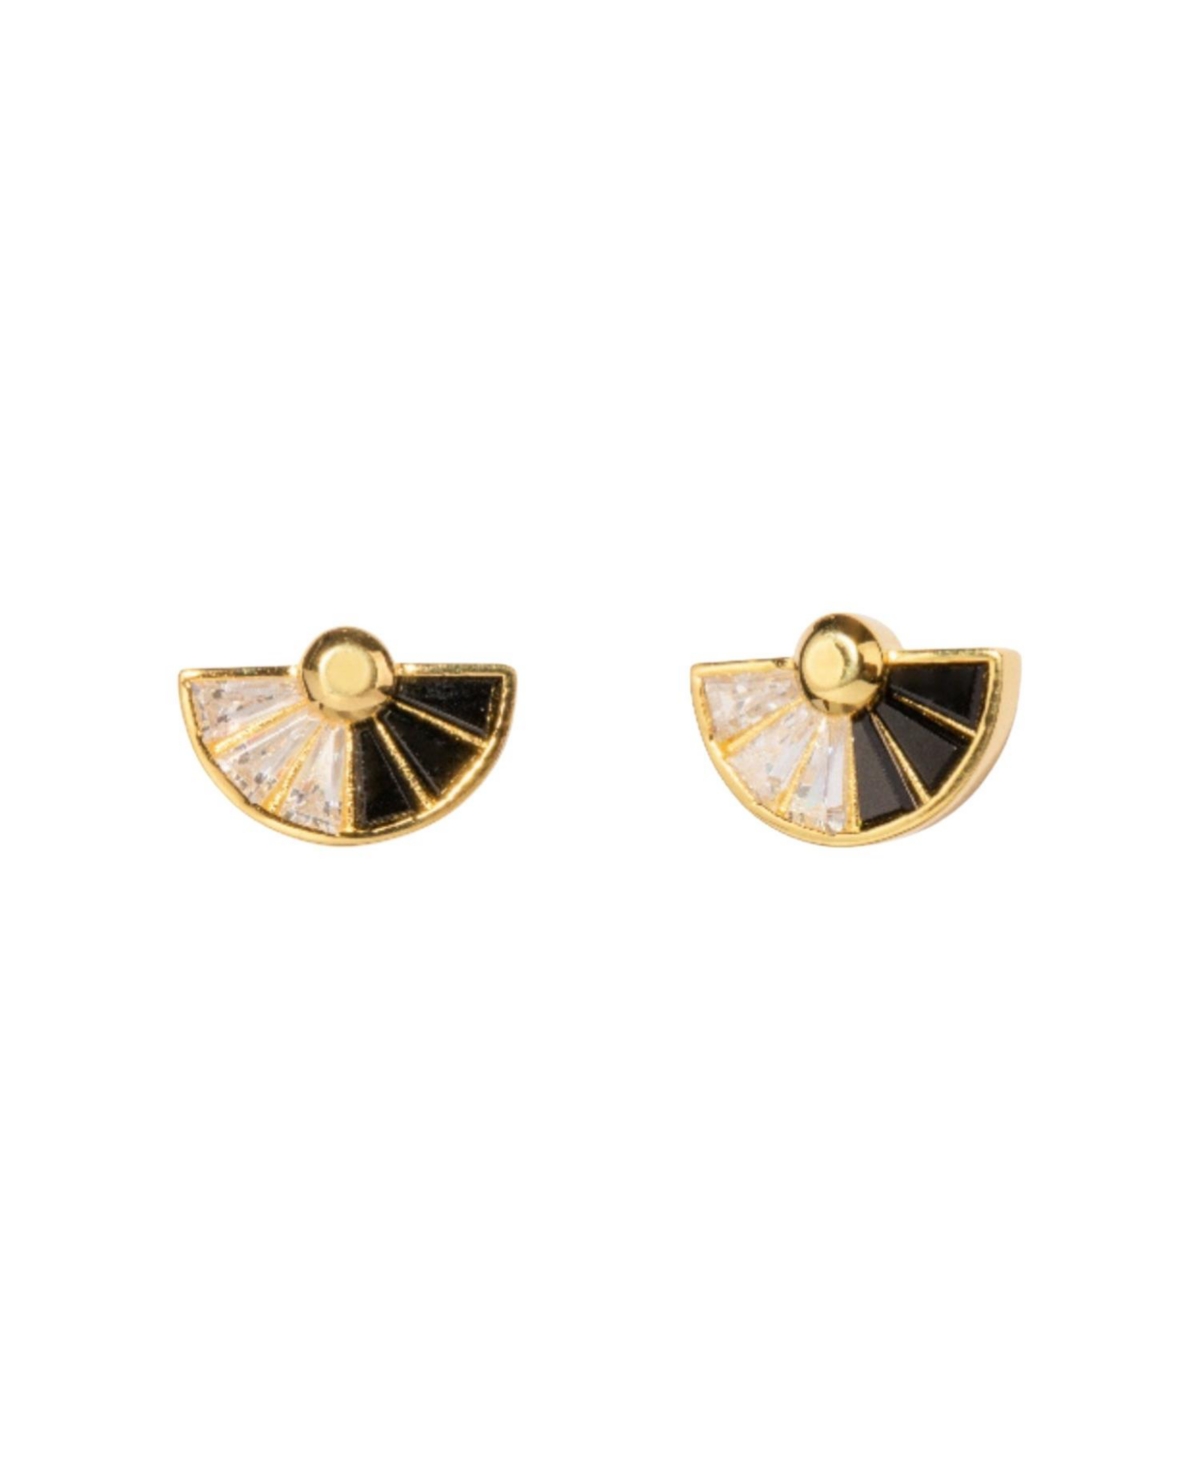 Little Sky Stone Women's Black And White Fan Shaped Stud Earrings In Gold